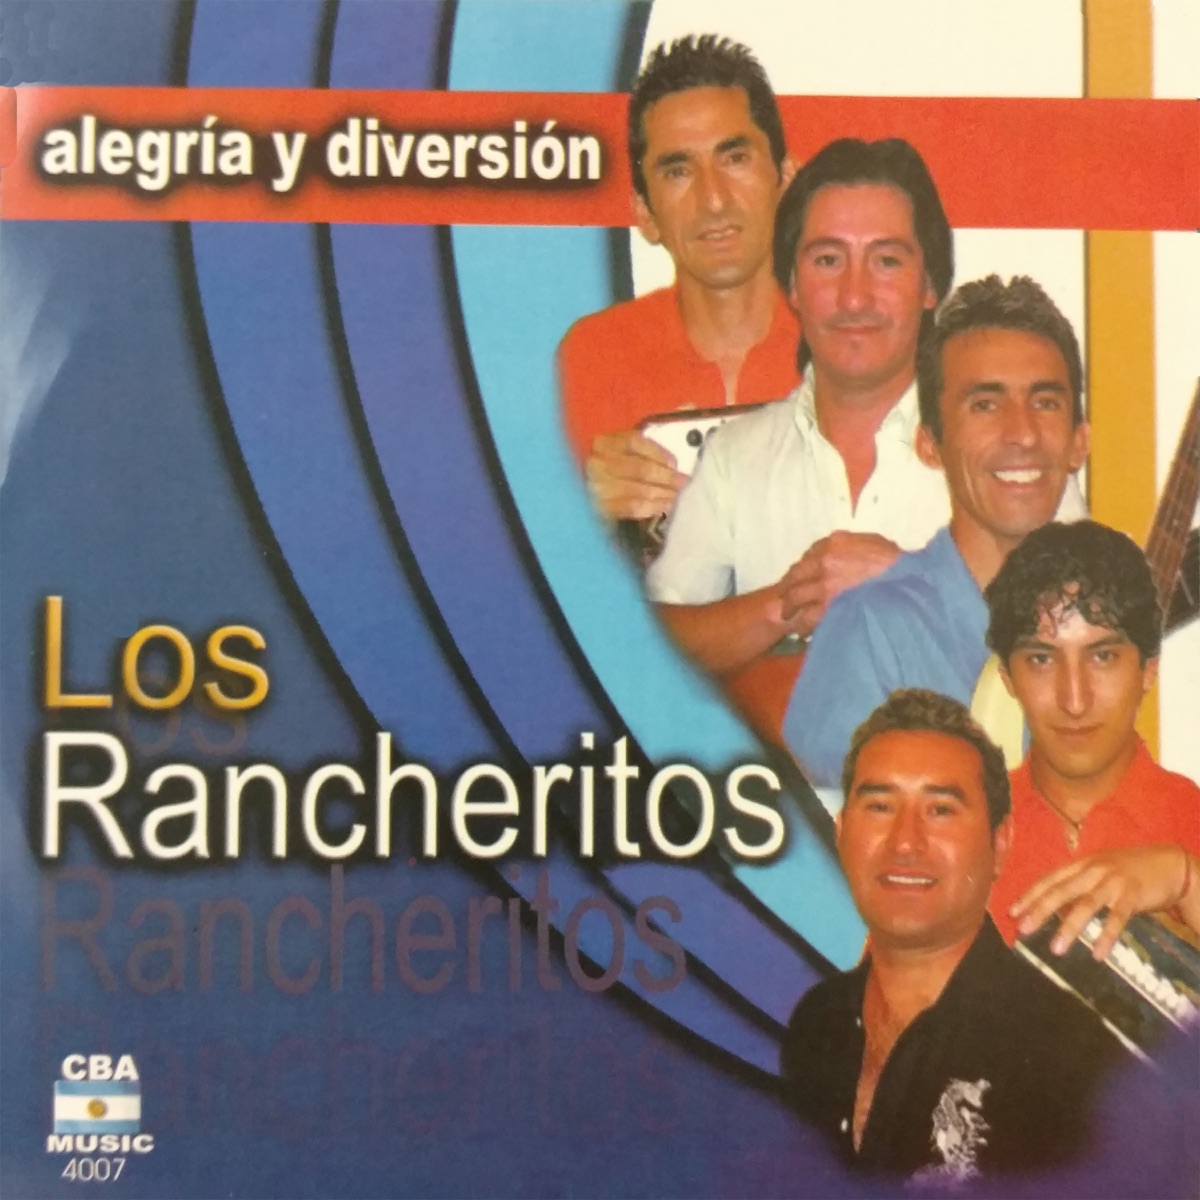 El Puerto del Olvido by Los Rancheritos on Apple Music